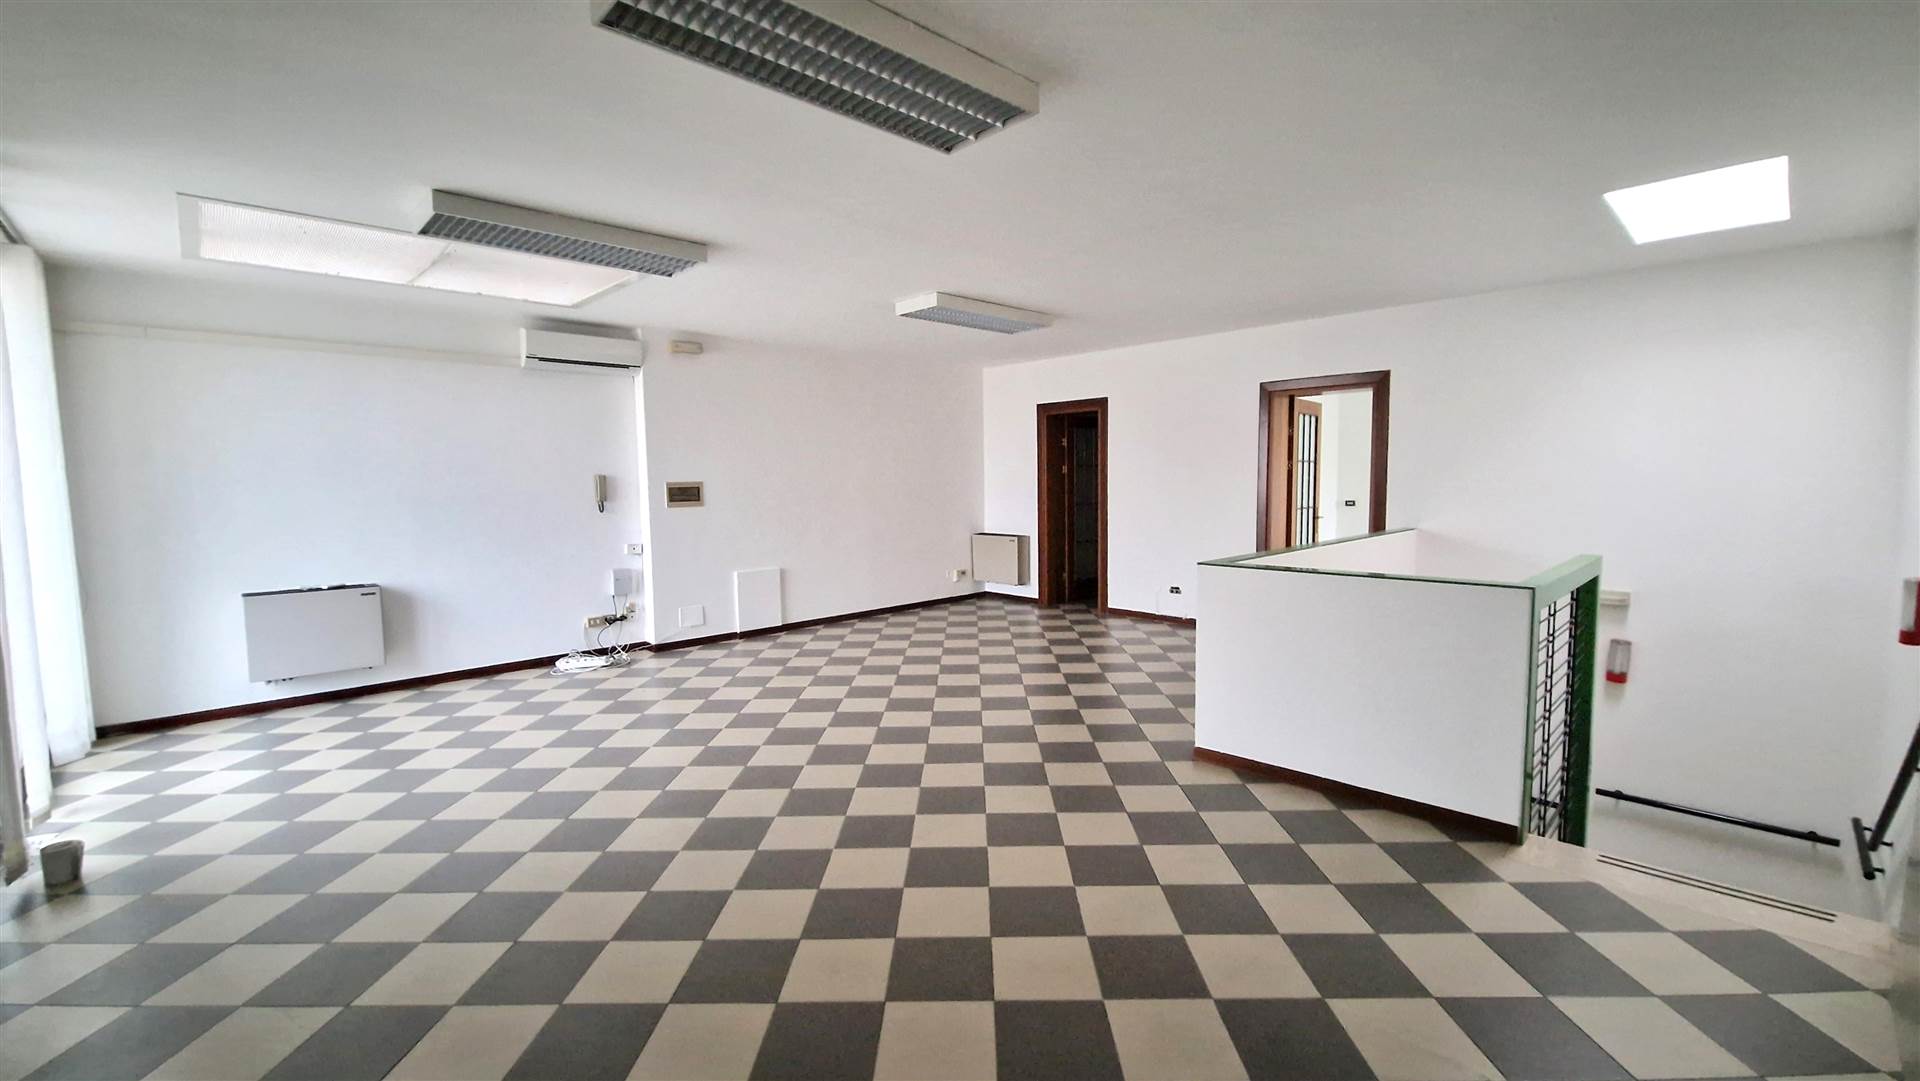 Ufficio / Studio in affitto a Monselice, 3 locali, prezzo € 950 | PortaleAgenzieImmobiliari.it